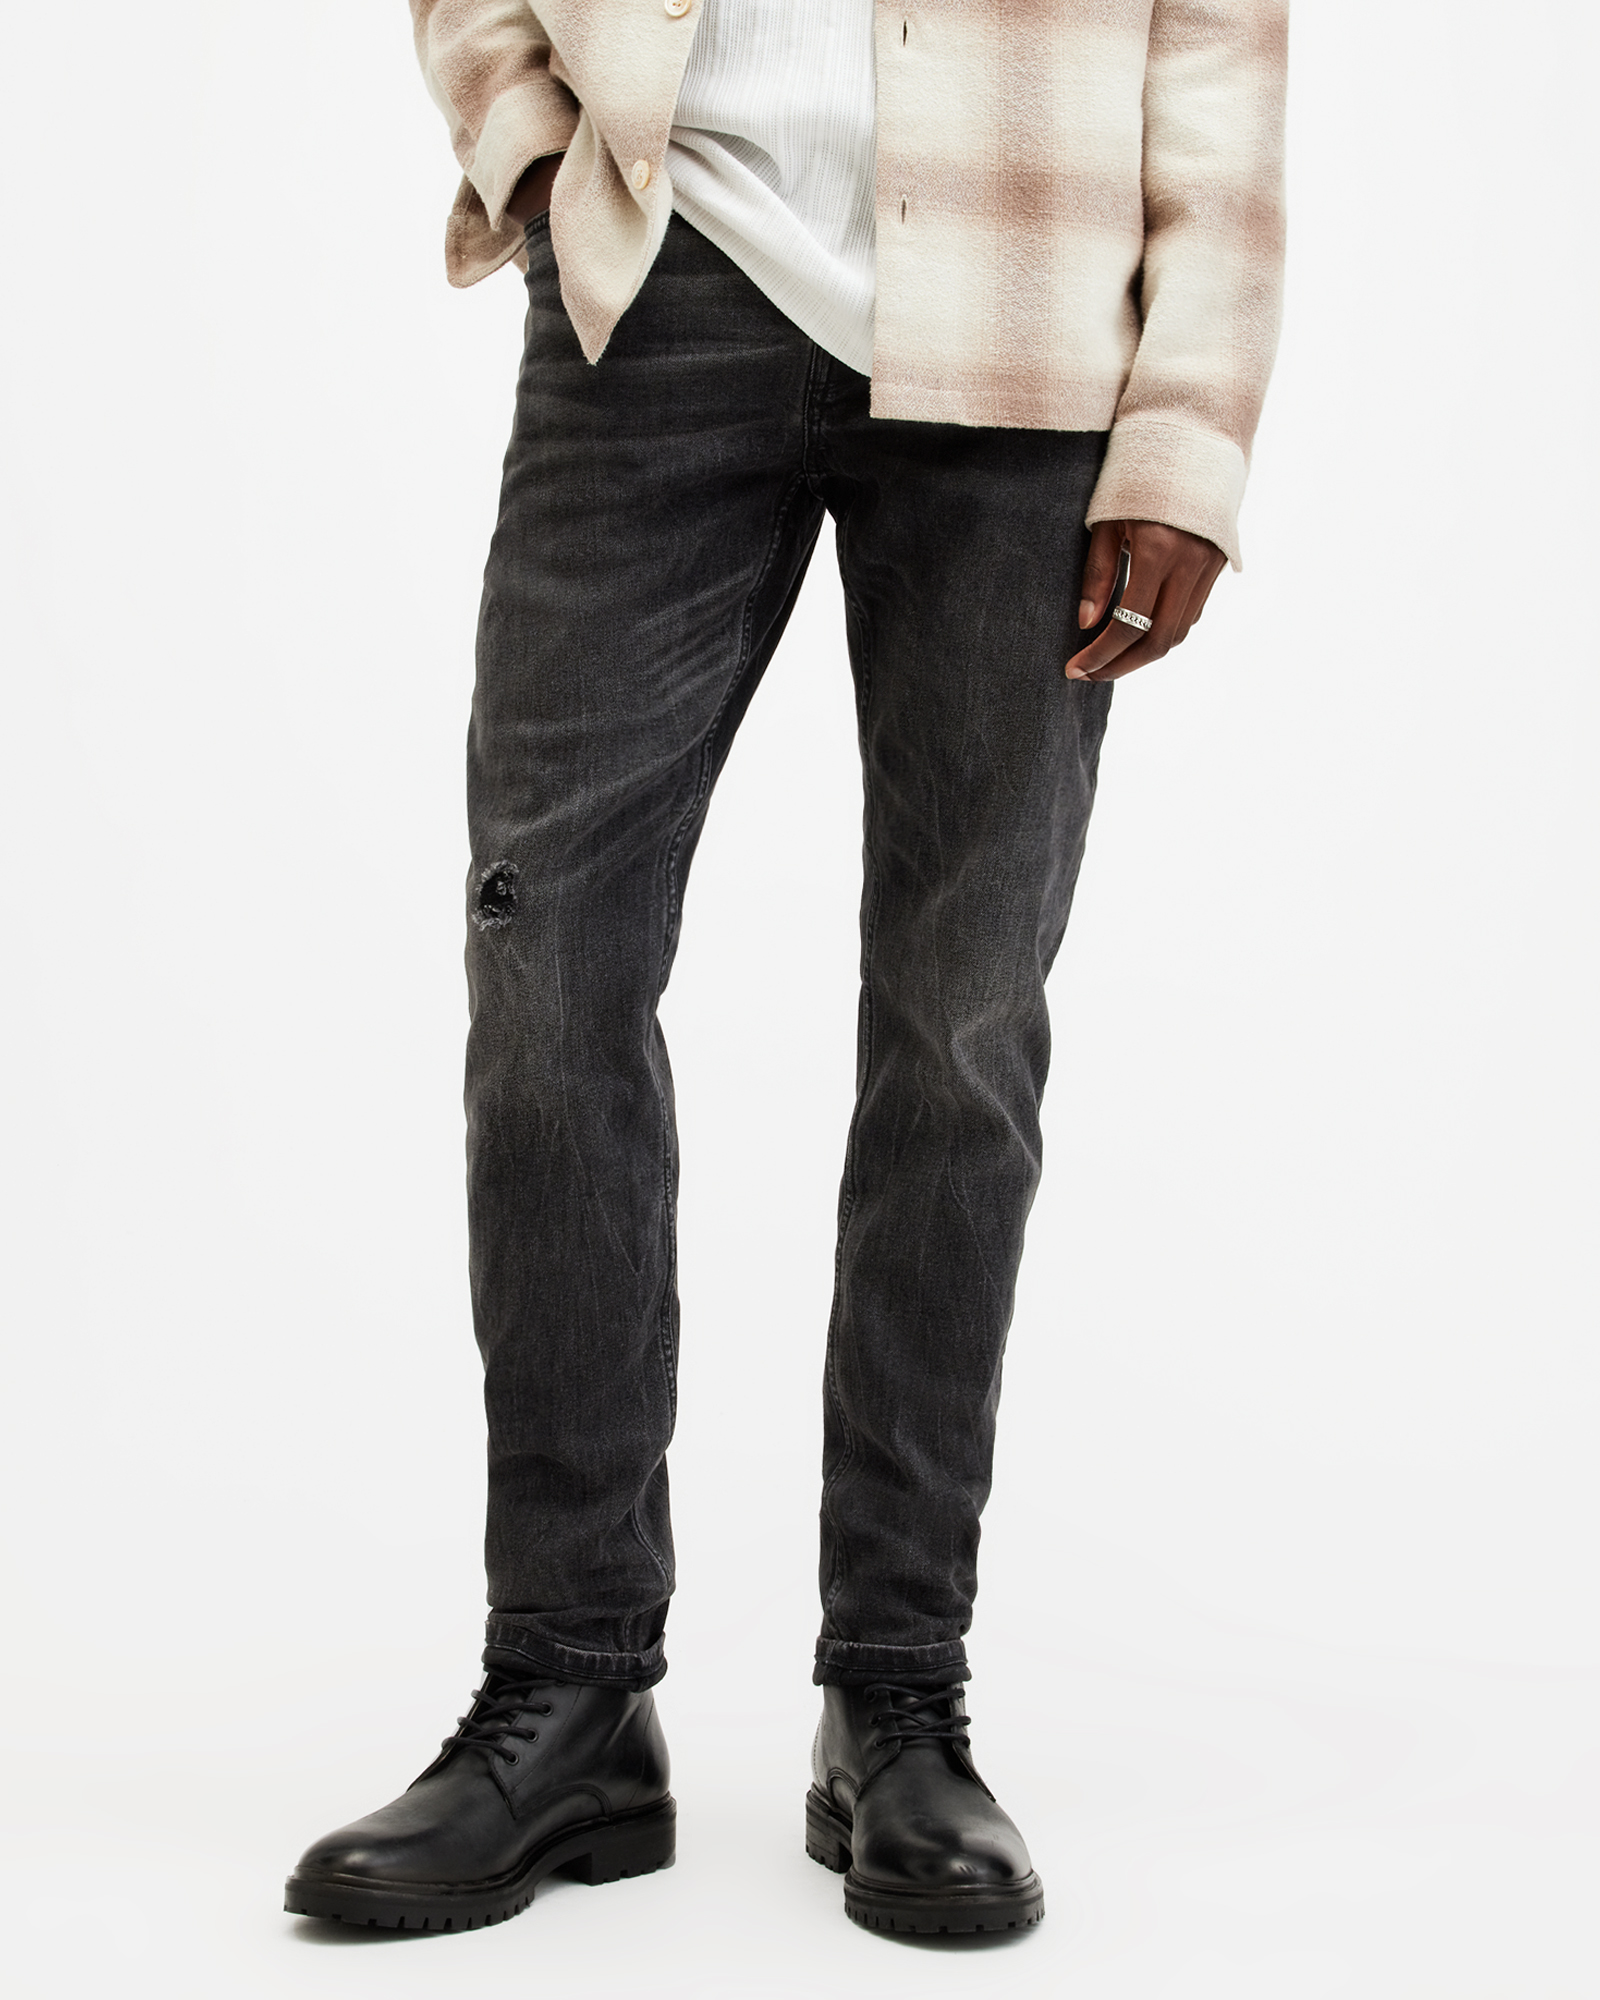 AllSaints Men's Cotton Traditional Rex Slim Jeans, Black, Size: 32/L30